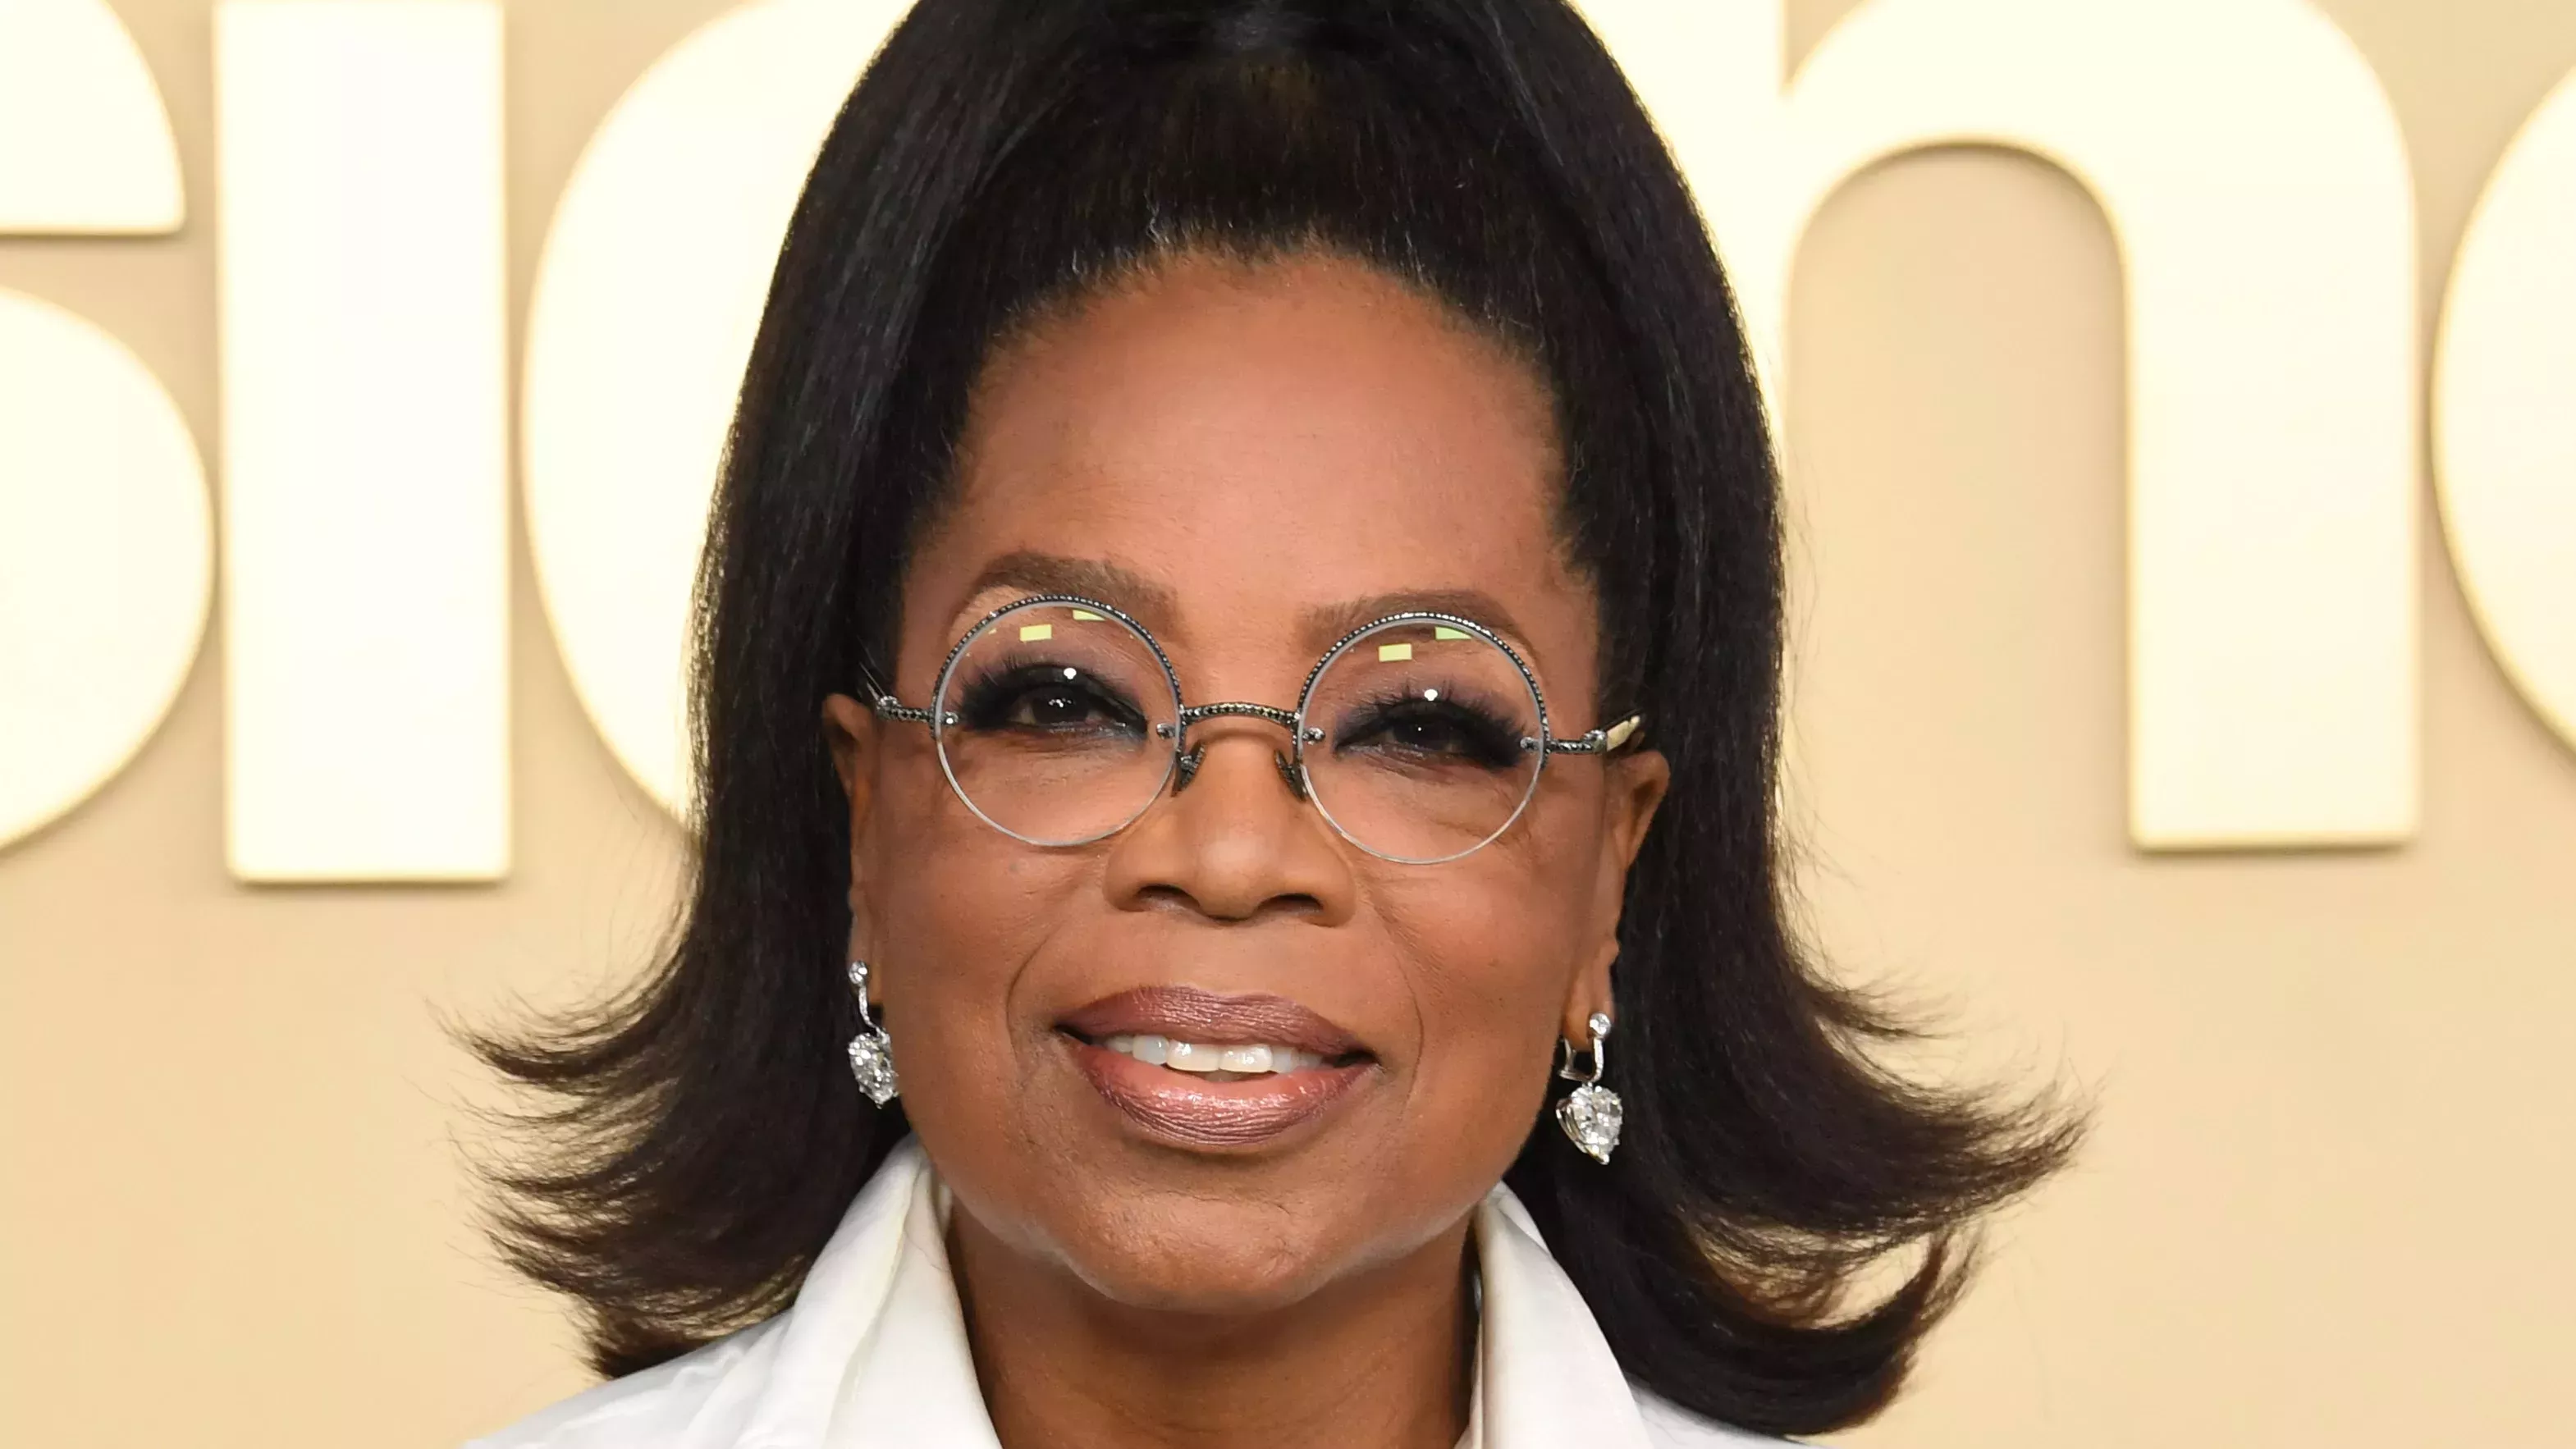 Probablemente podría ver mi reflejo en la brillante y alta media coleta de Oprah